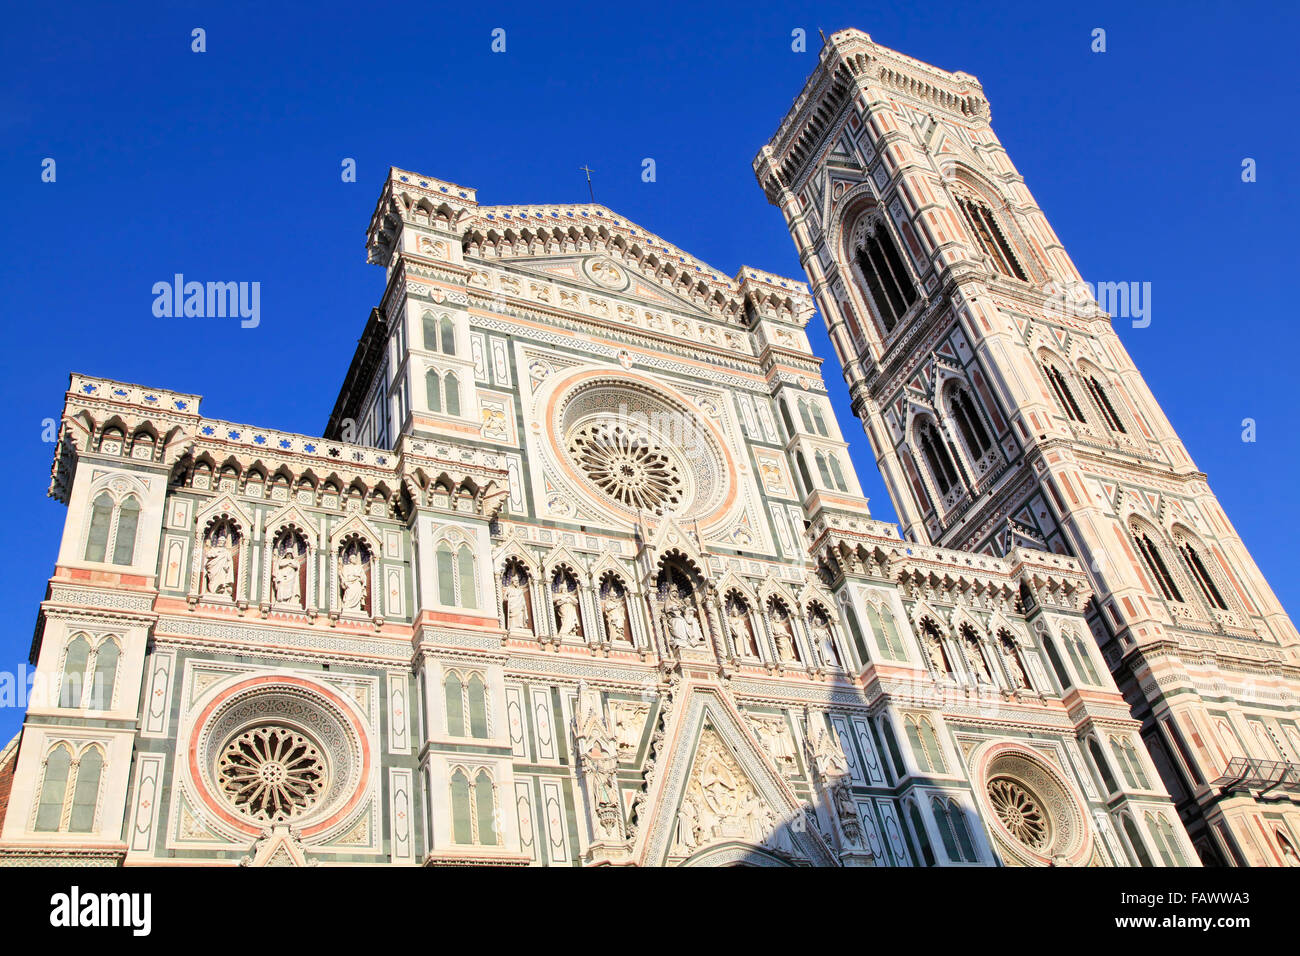 Santa Maria del Fiore Dome, Florence, Italy Stock Photo